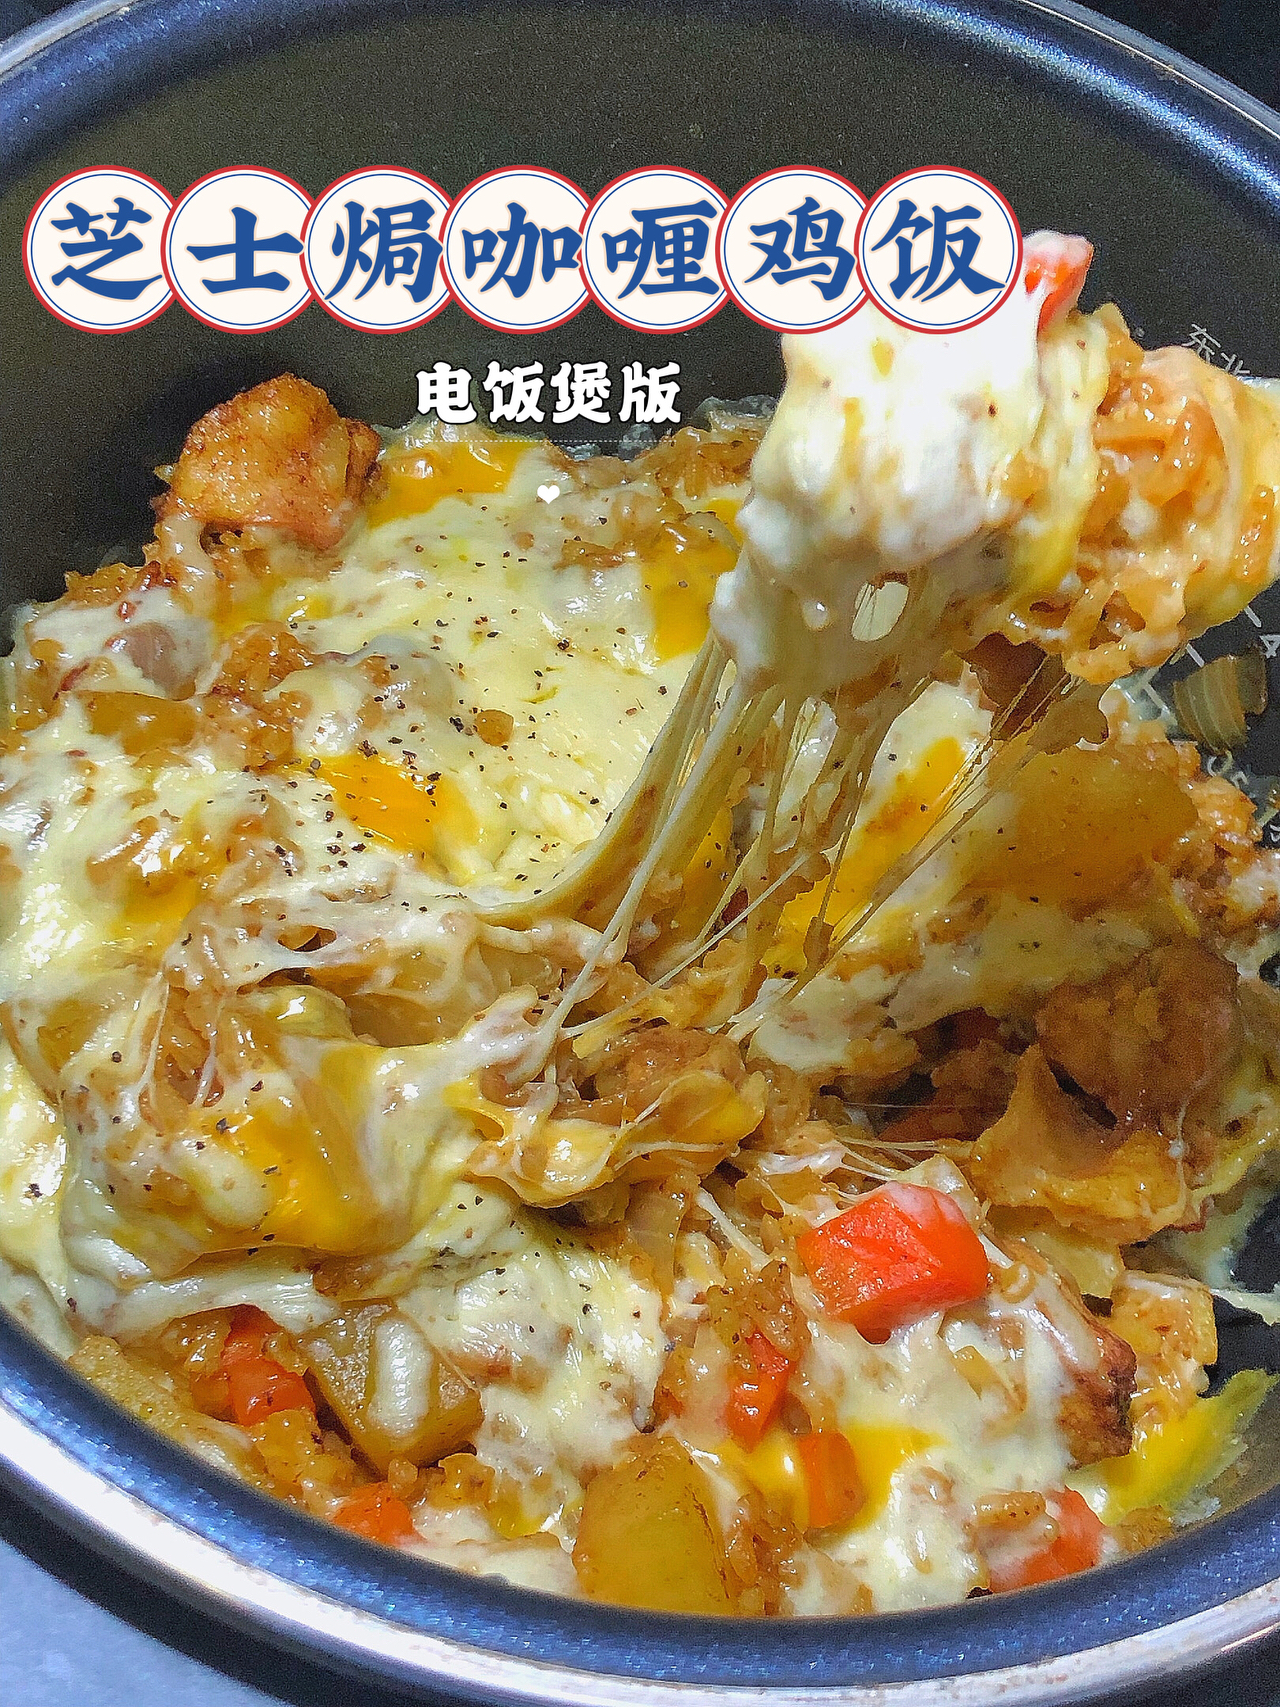 芝士焗咖喱鸡饭·电饭煲版